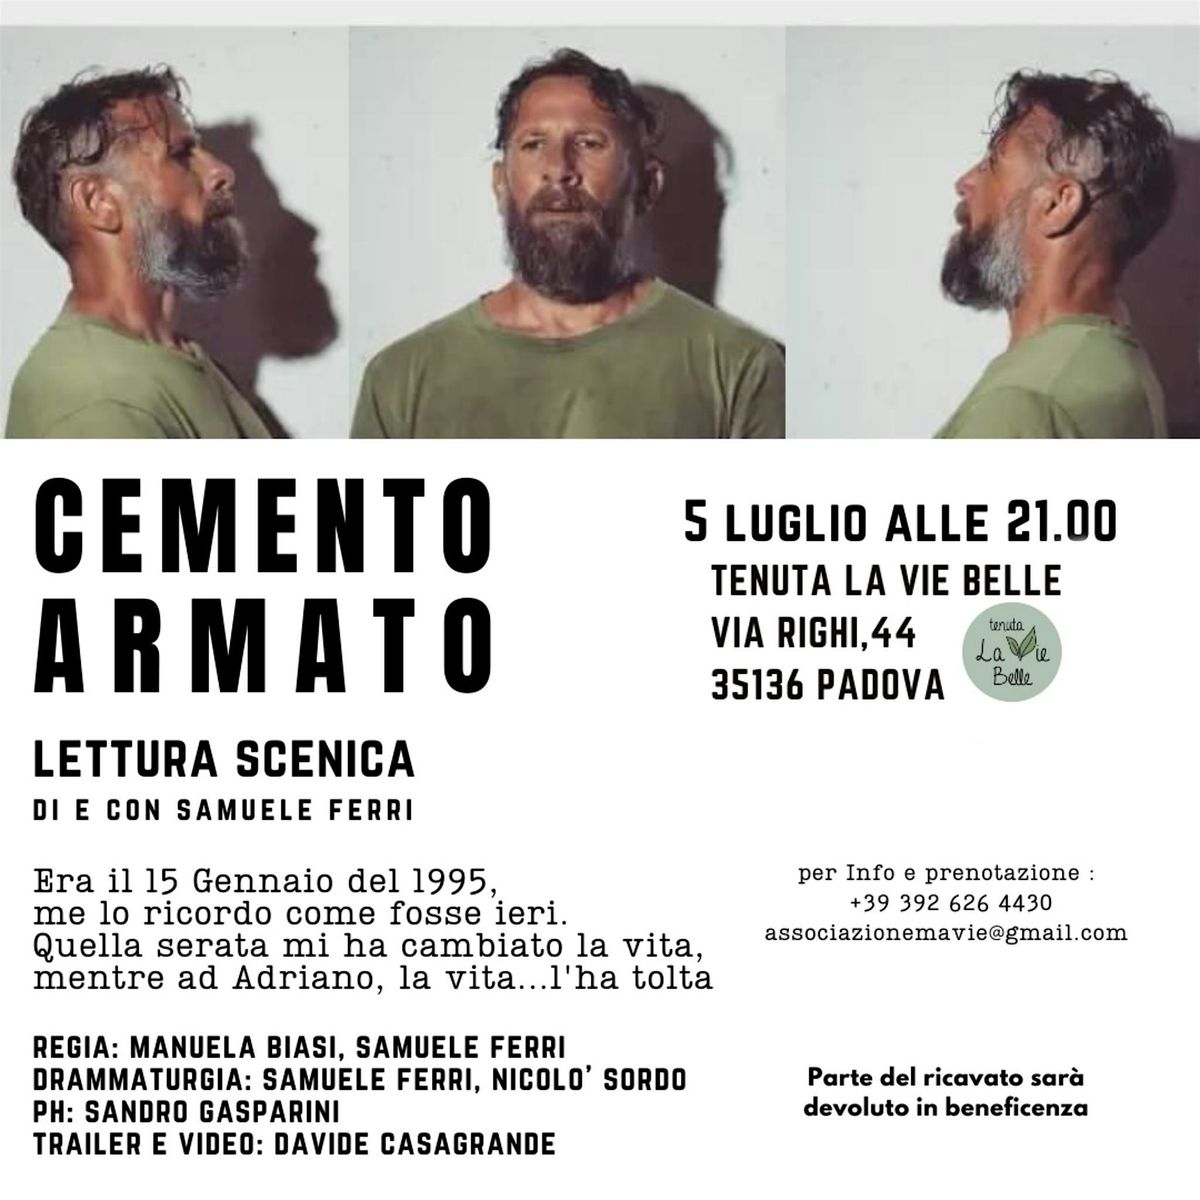 CEMENTO ARMATO, lettura scenica di Samuele Ferri